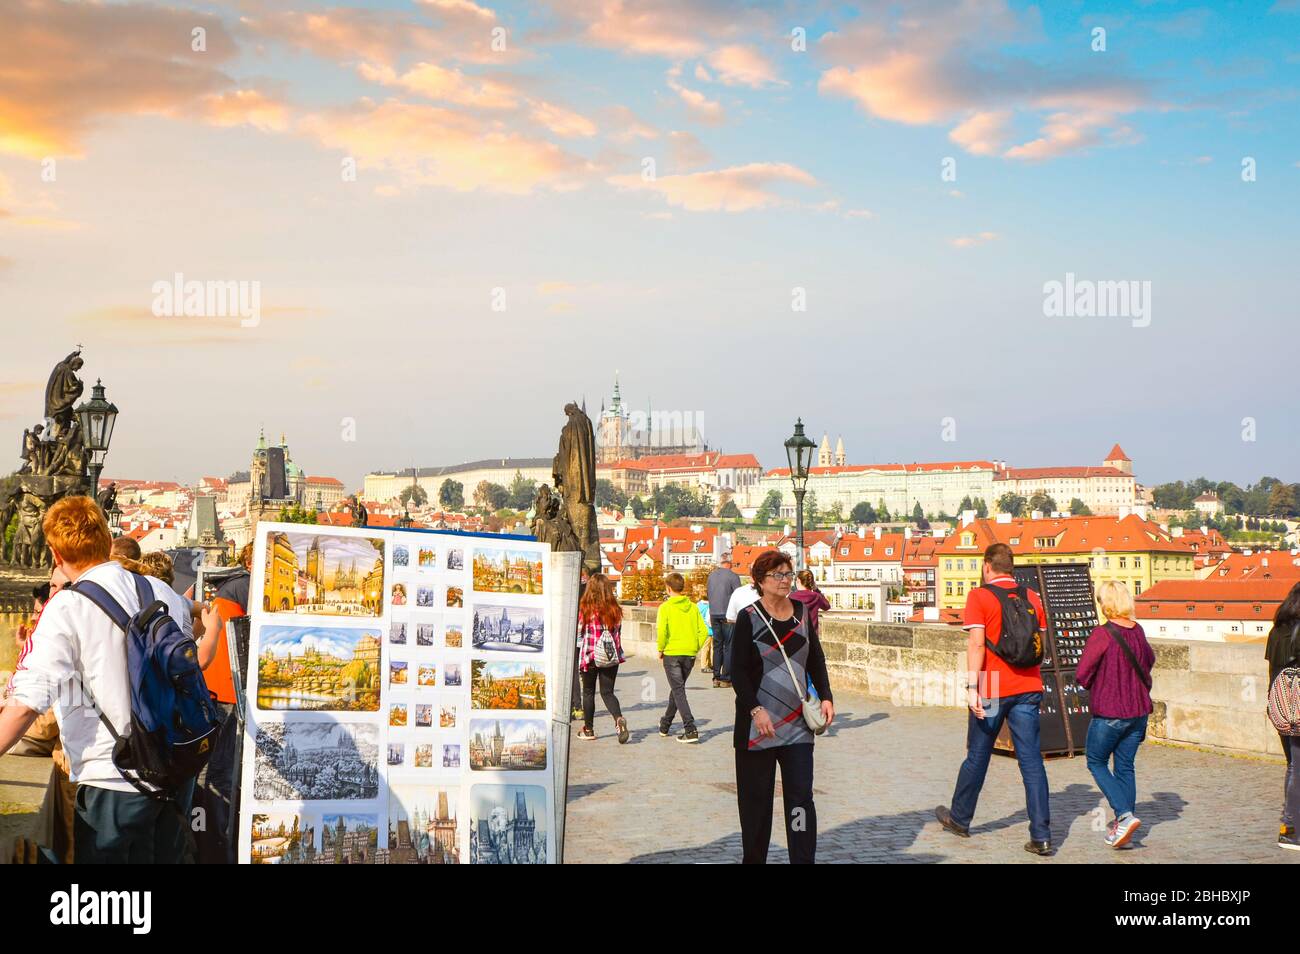 La Cattedrale di San Vito e il complesso del Castello in vista, mentre i turisti passano accanto artisti di strada e statue sul Ponte Carlo di Praga, in Repubblica Ceca. Foto Stock